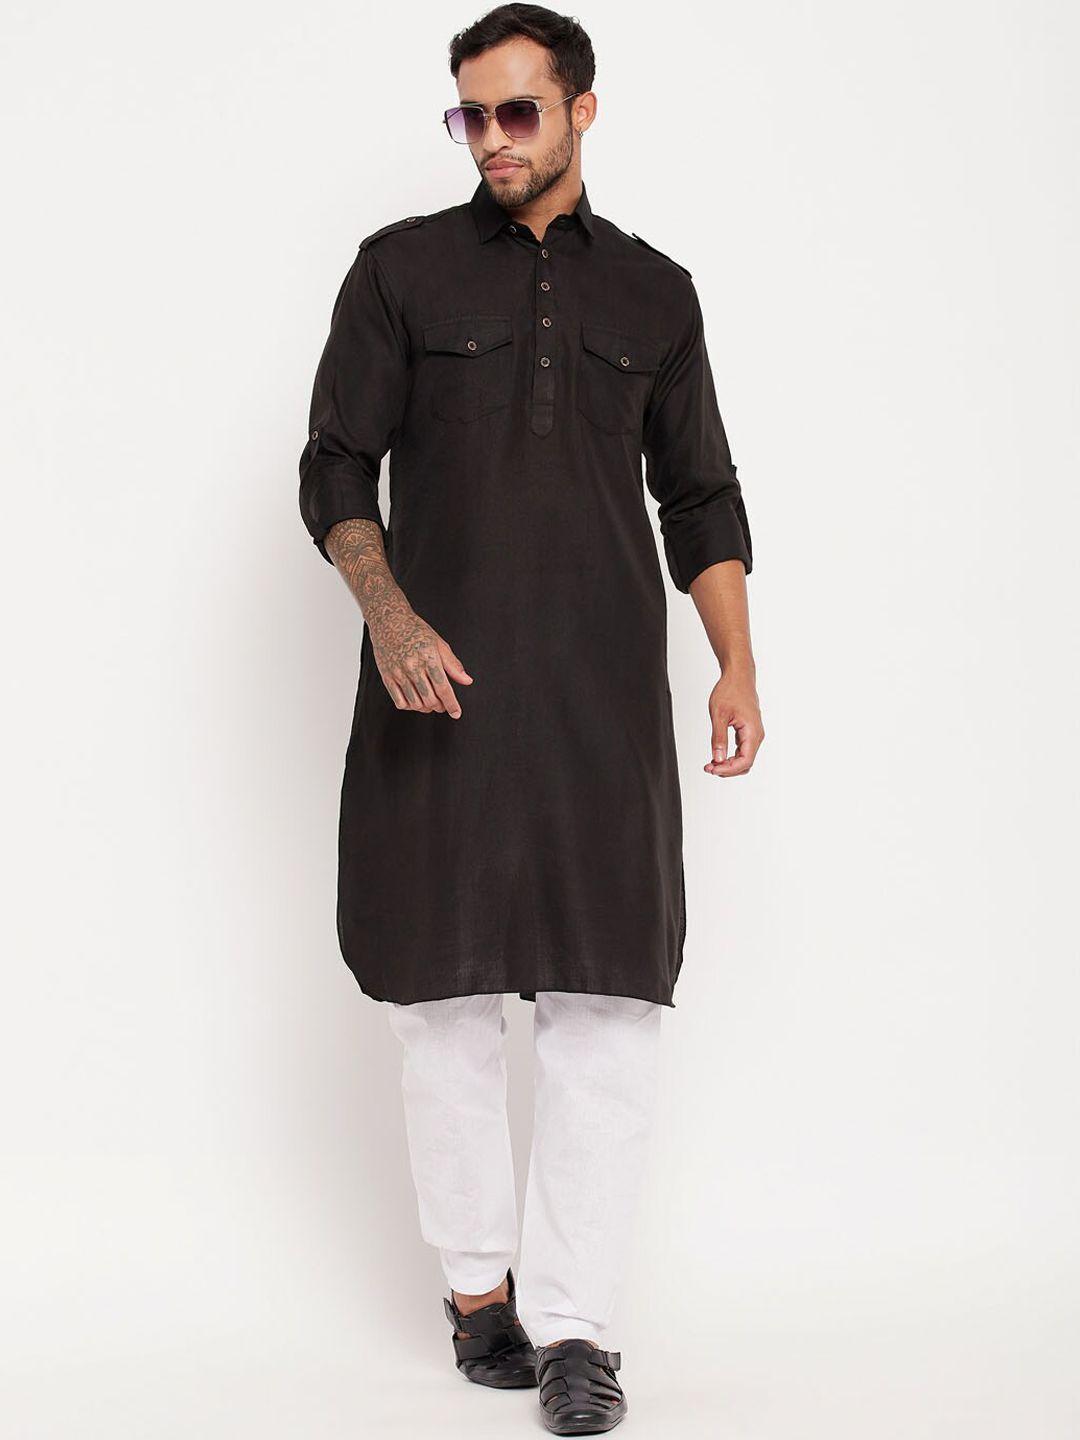 vm shirt collar pathani kurta with pyjamas